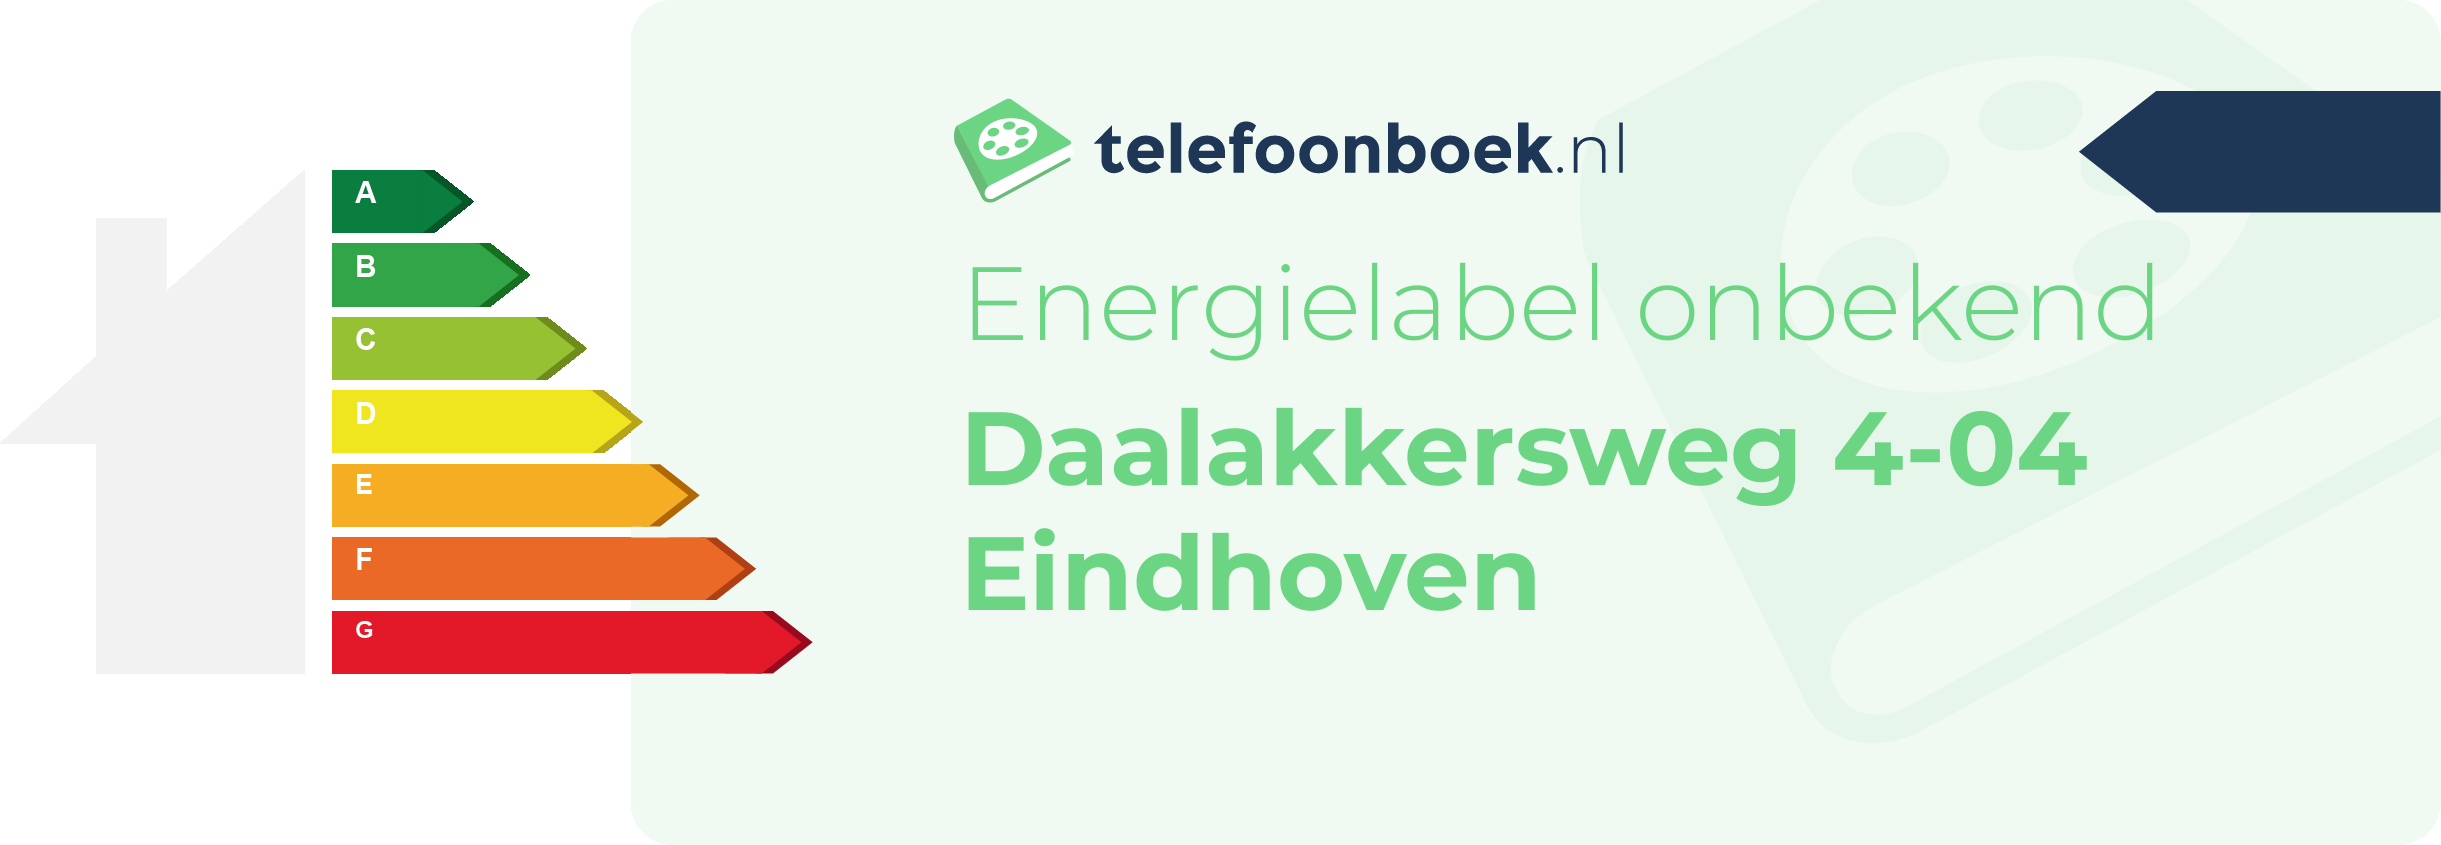 Energielabel Daalakkersweg 4-04 Eindhoven